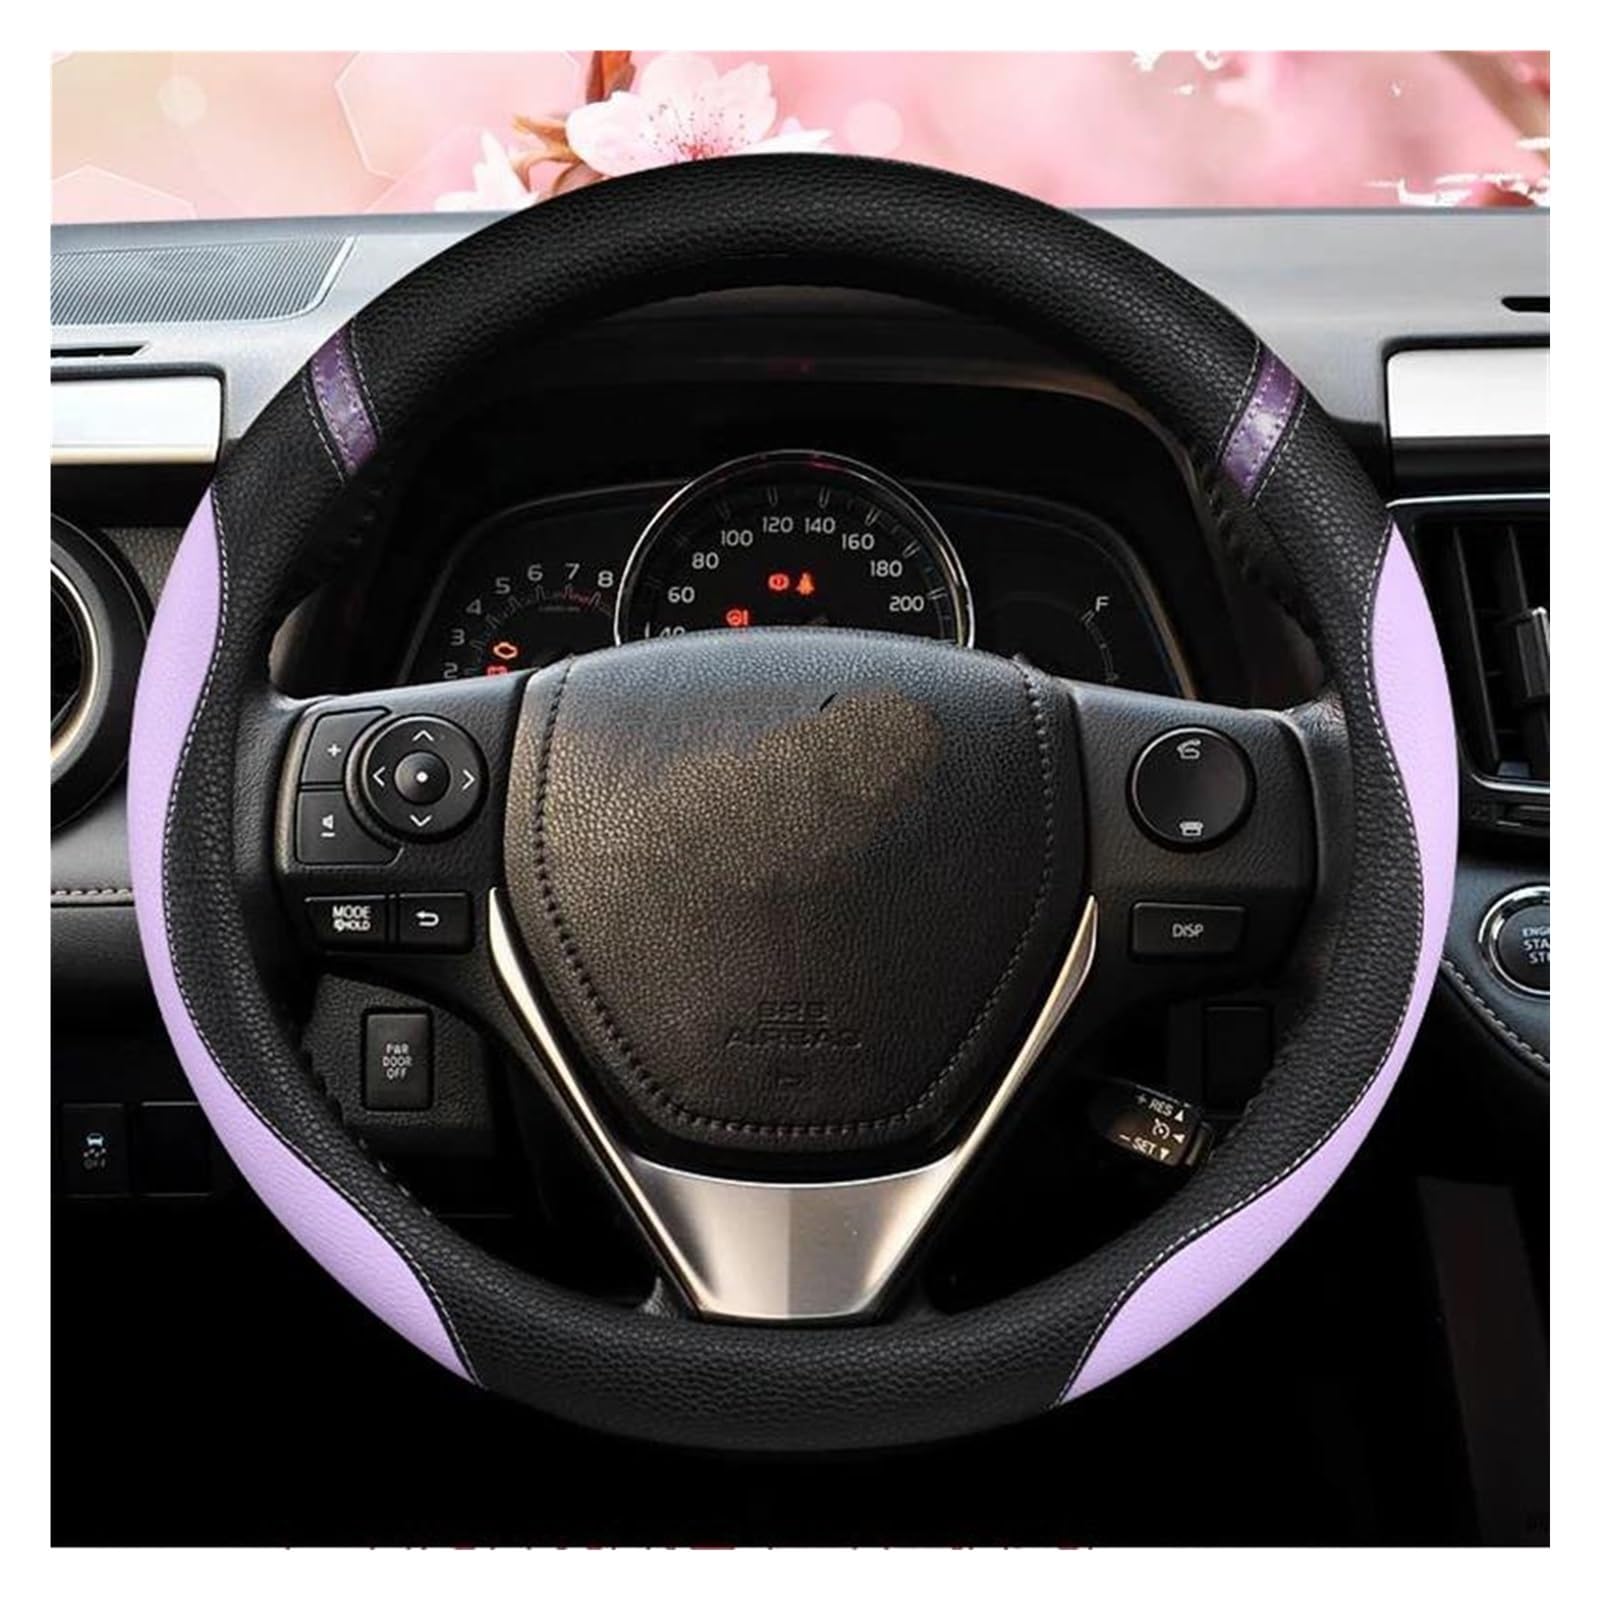 Auto Lenkradbezug Kompatibel Mit Toyota Für RAV4 2013 2014 2015 2016 2017 2018 2019 Für Scion IM 2016 37/38 cm 14,5/15 Zoll Lenkrad Anti-Rutsch-Zubehör Autodekoration(Purple) von JJRFVBGT